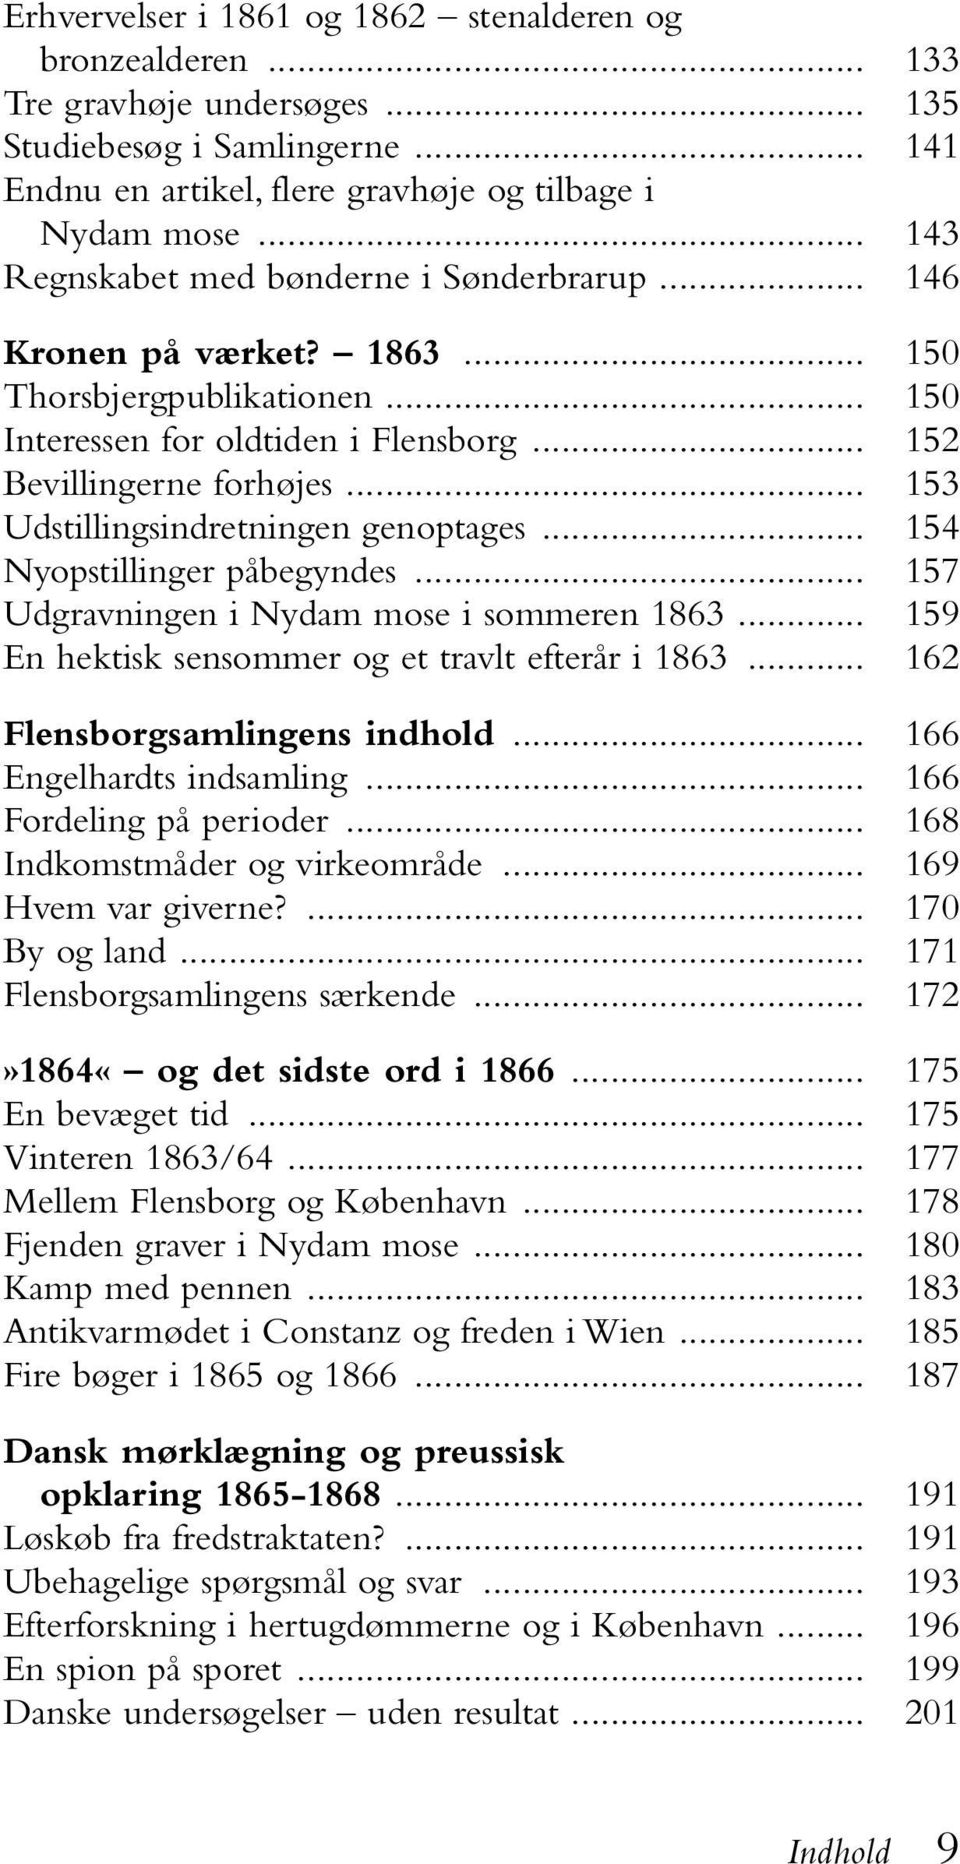 .. 153 Udstillingsindretningen genoptages... 154 Nyopstillinger påbegyndes... 157 Udgravningen i Nydam mose i sommeren 1863... 159 En hektisk sensommer og et travlt efterår i 1863.